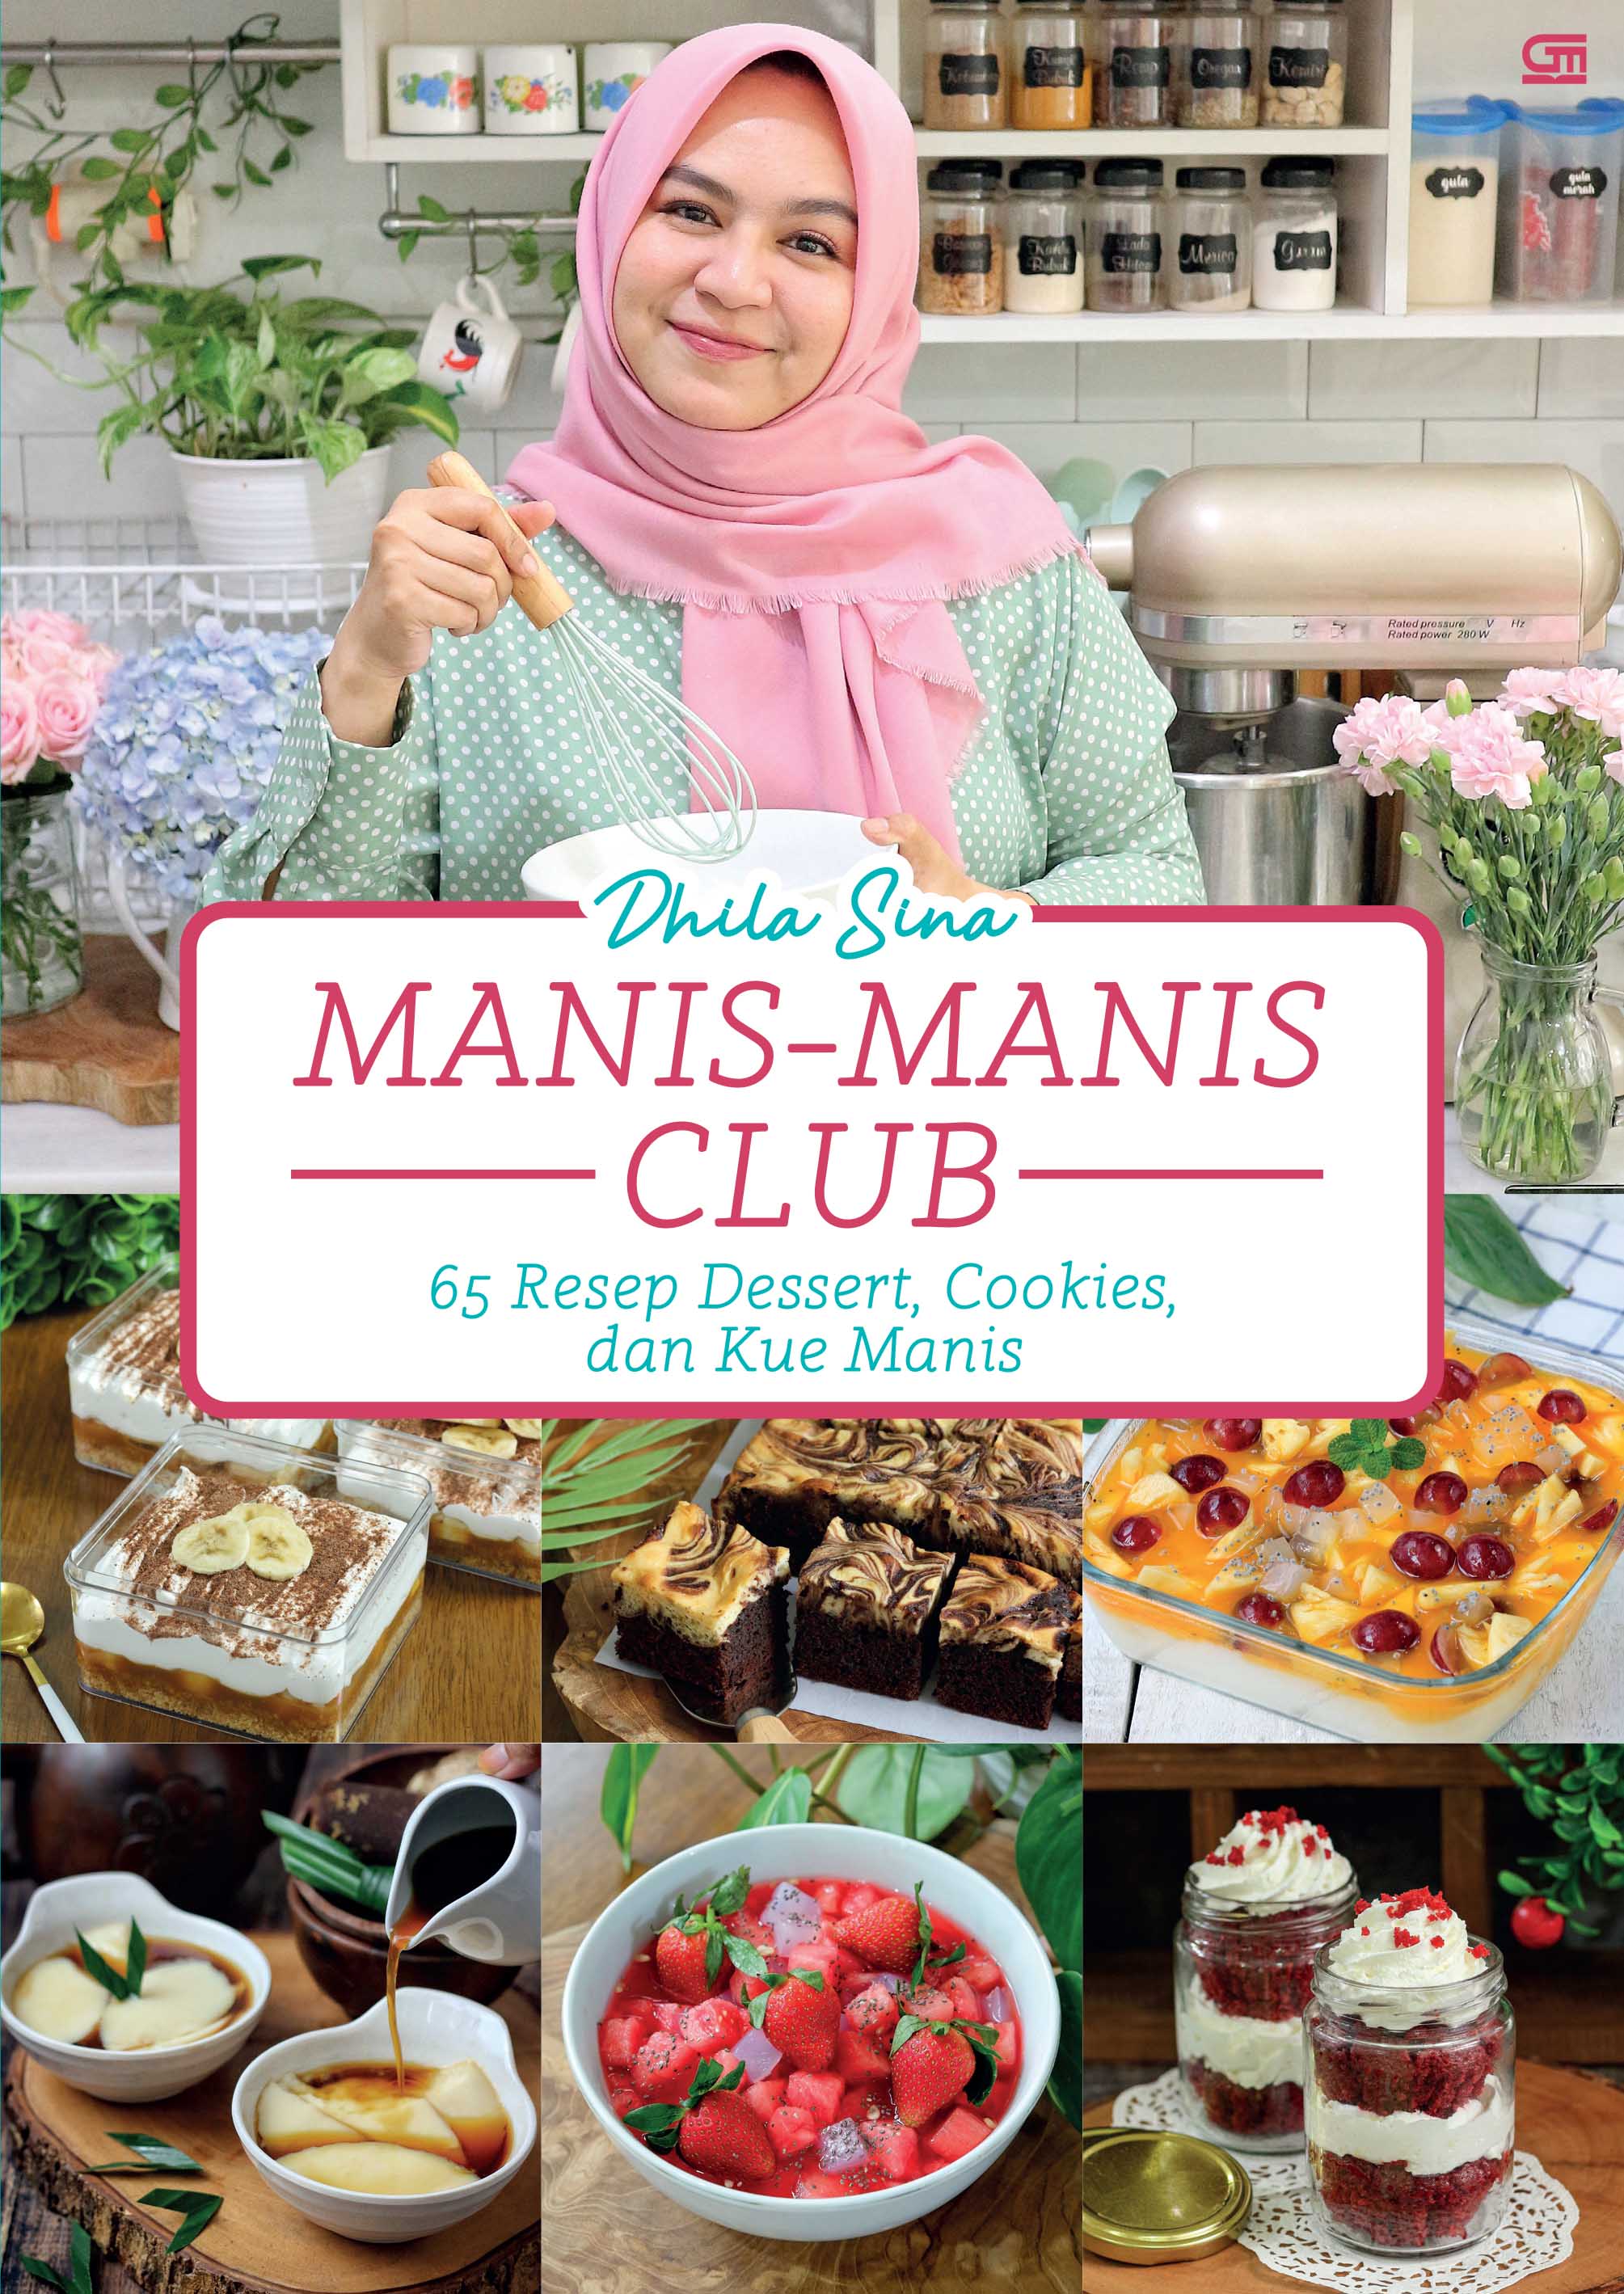 Manis-Manis Club - 65 Resep Dessert, Cookies, dan Kue Manis